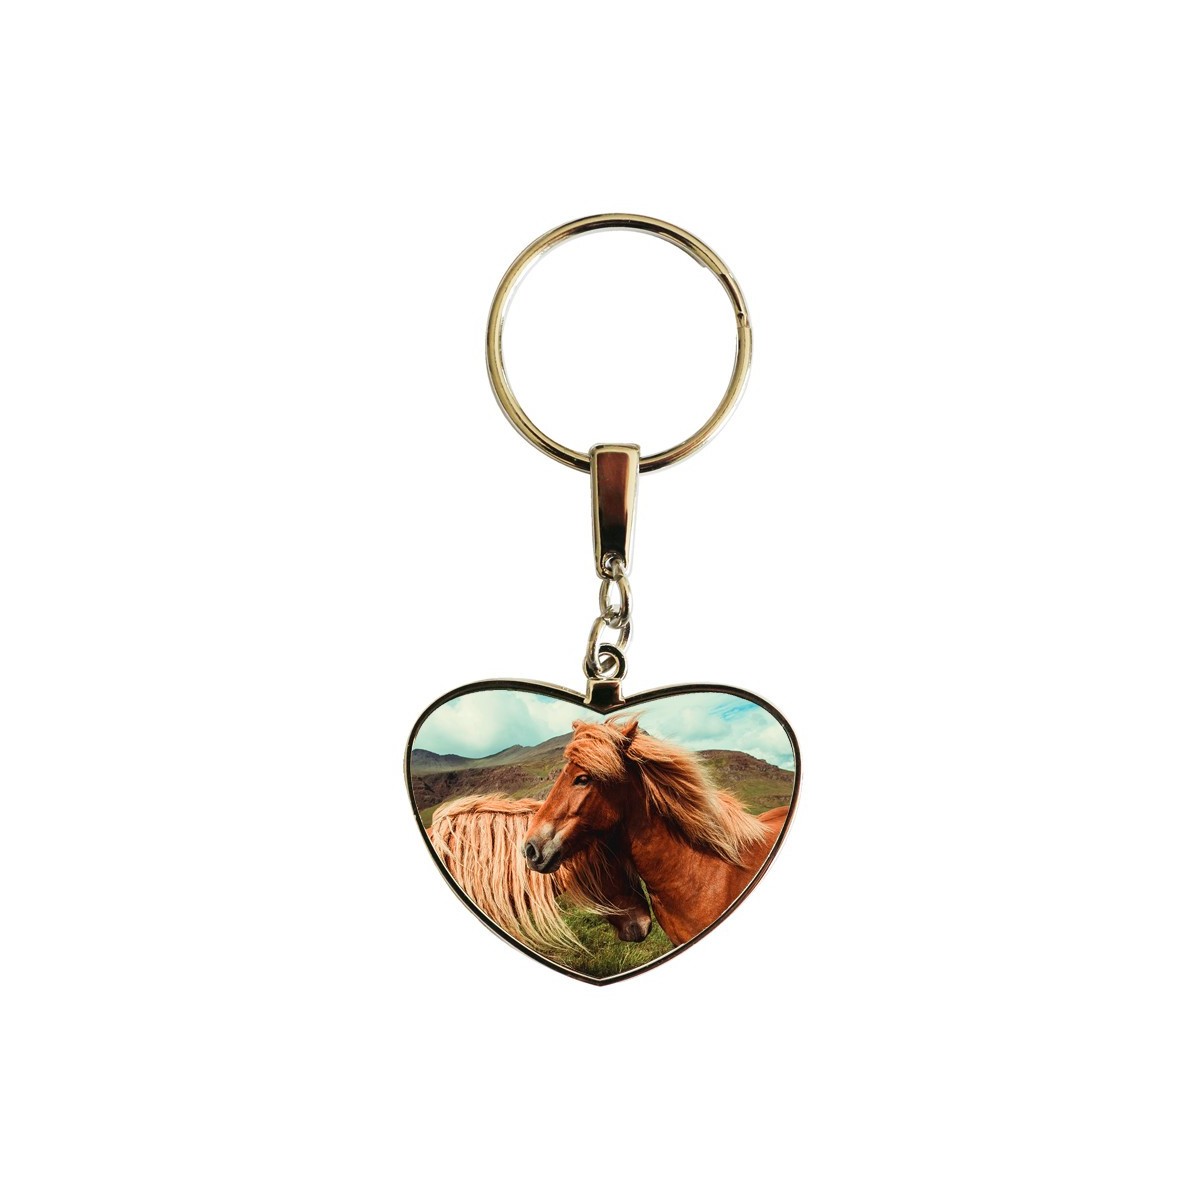 Porte-clés double face en métal forme coeur avec chevaux tête bêche